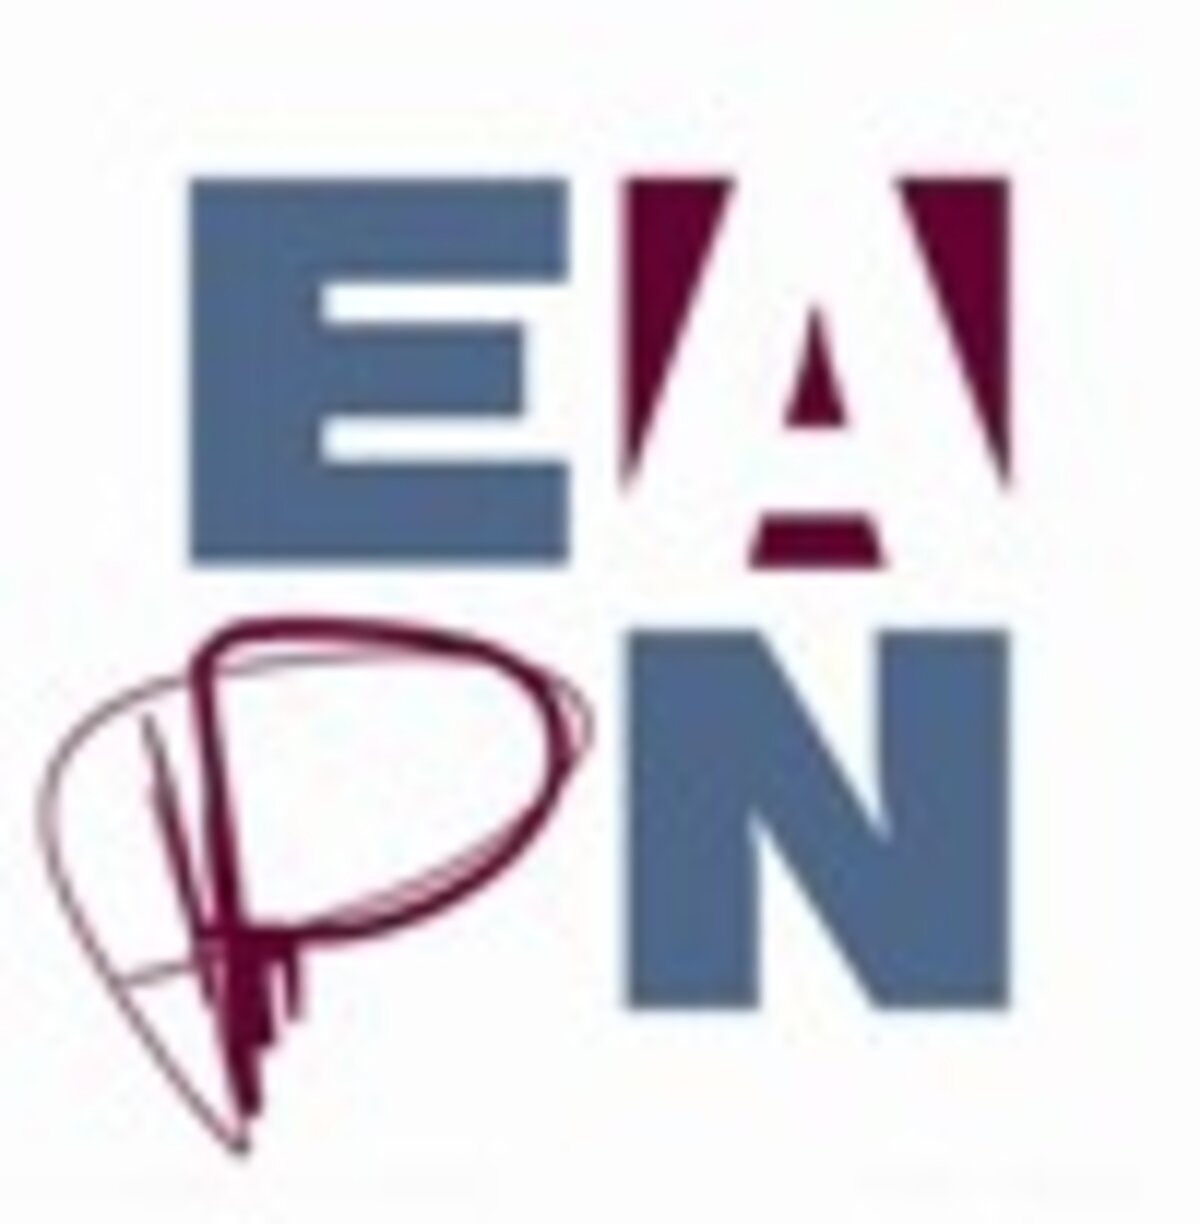 EAPN - European Anti-Poverty Network